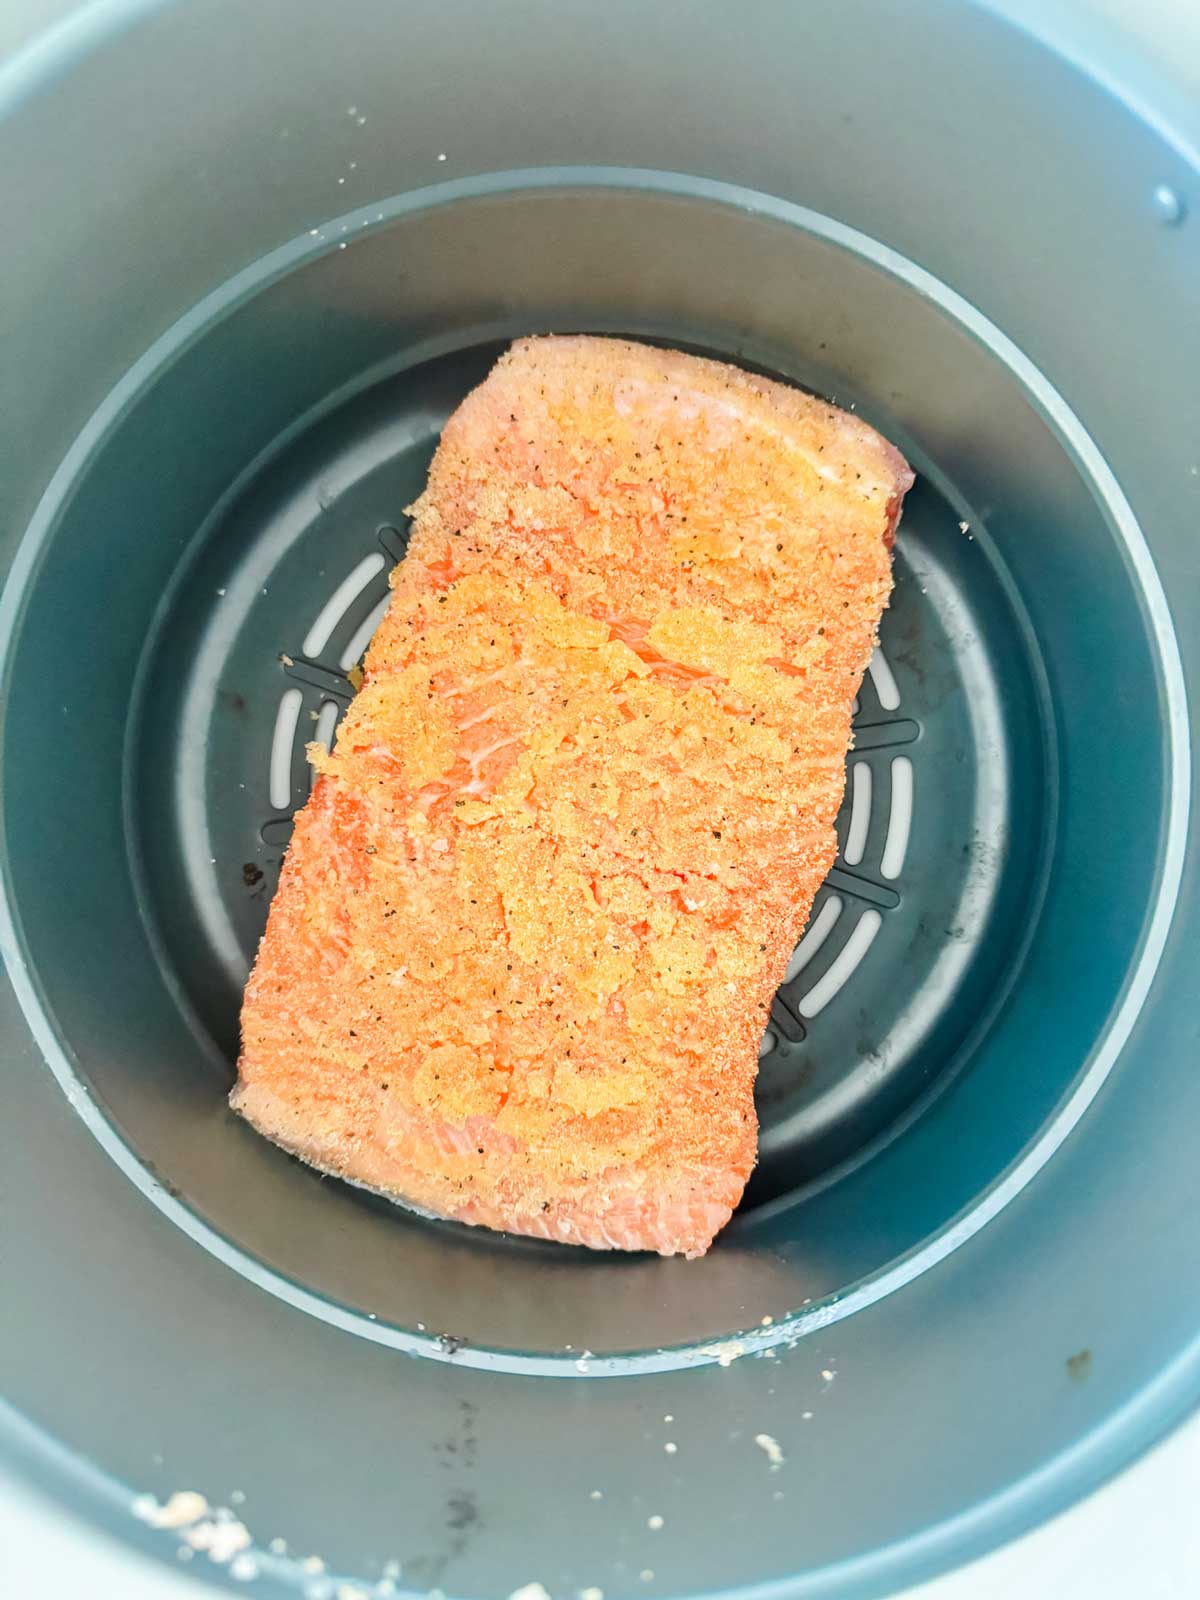 Raw salmon in an air crisp basket of a Ninja Foodi.